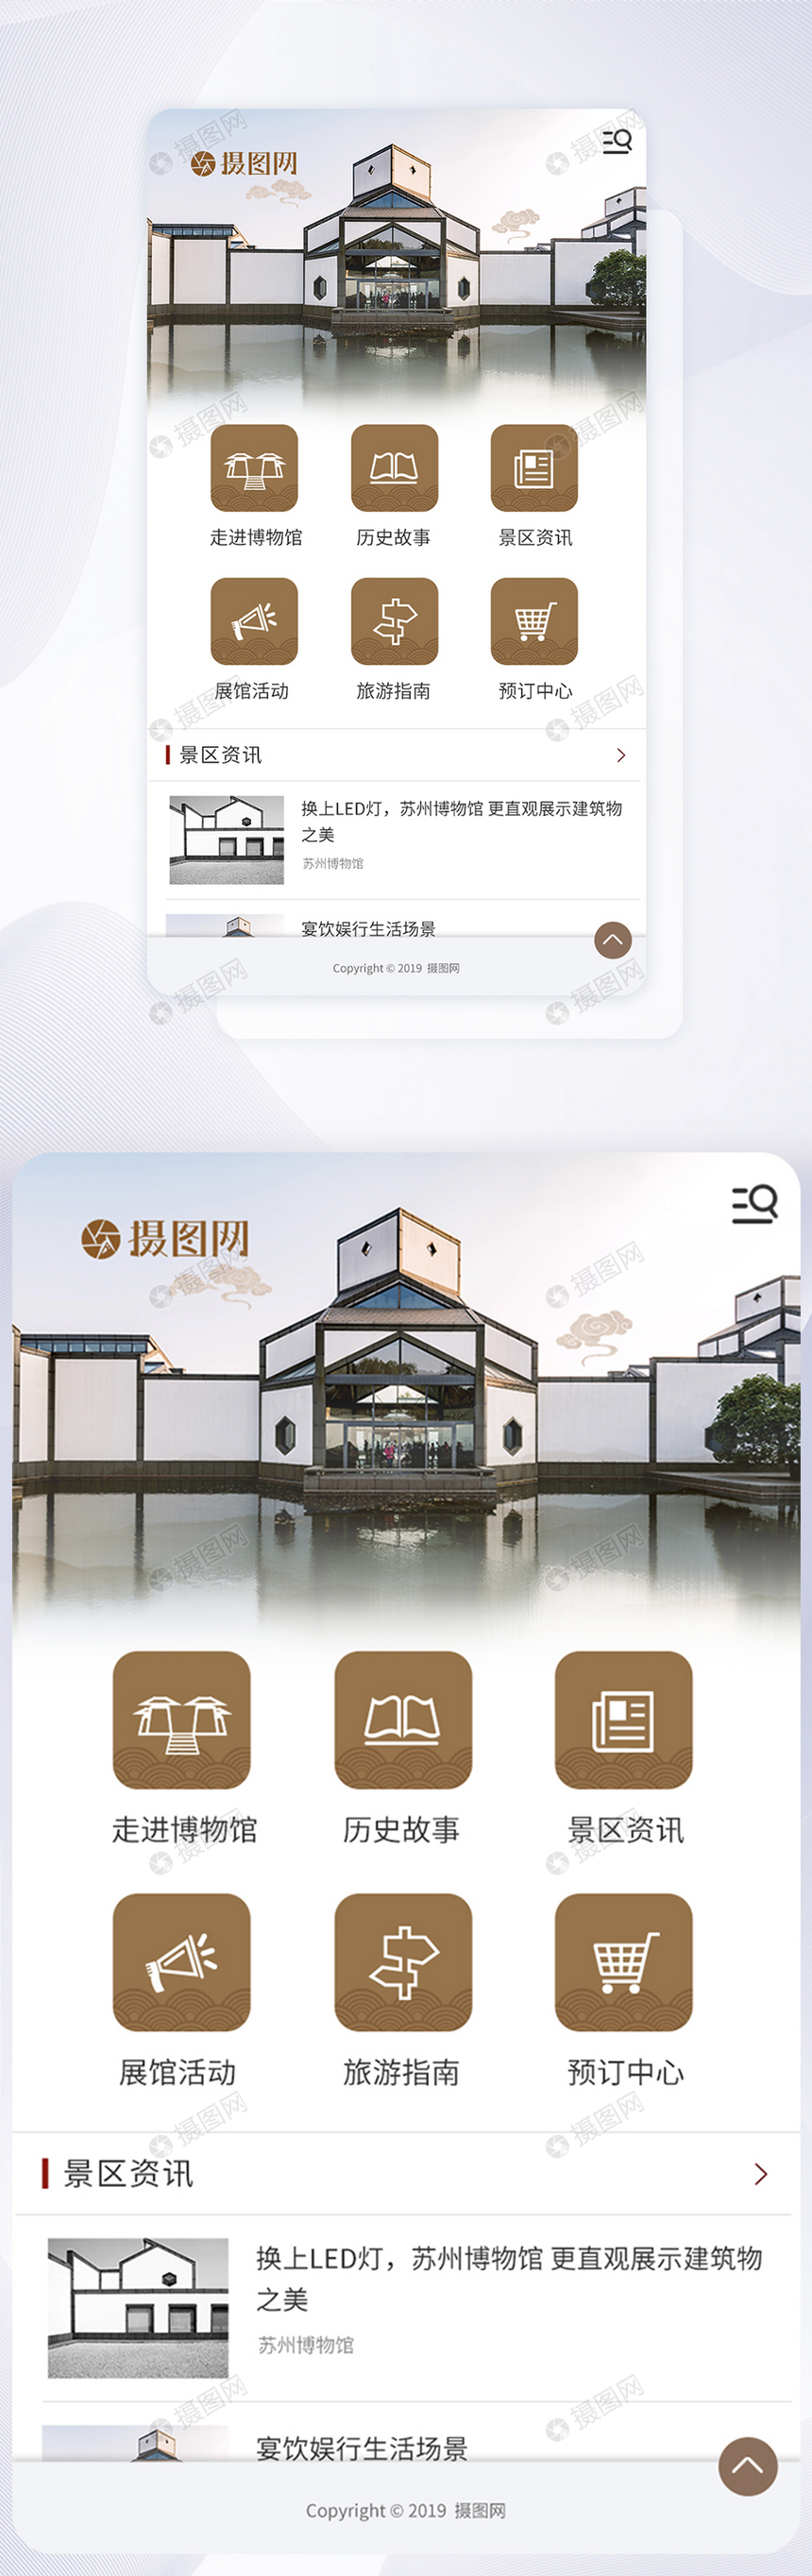 UI设计博物馆app首页界面图片